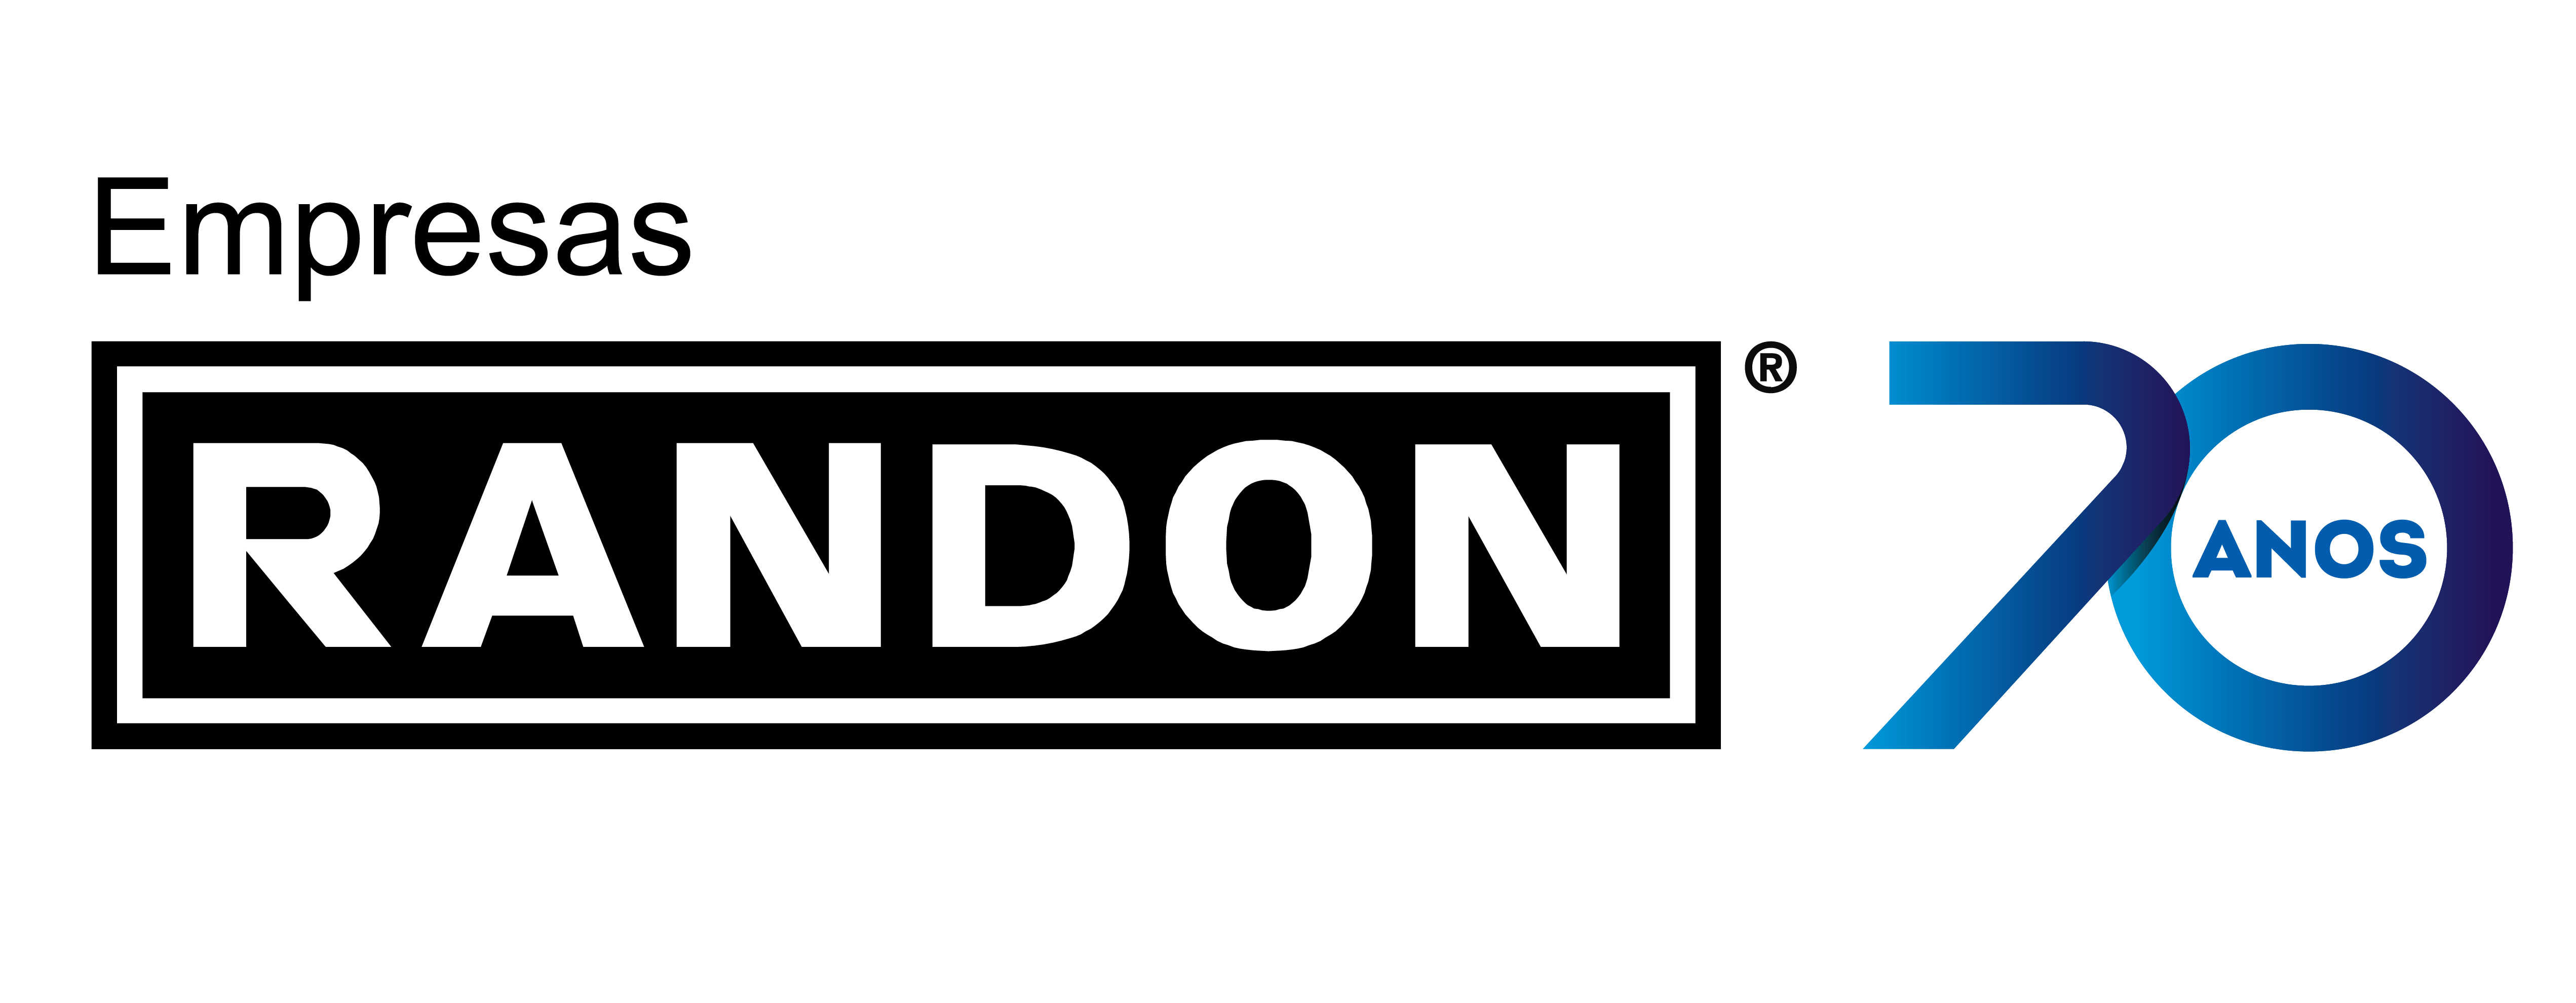 Randon Logo - Randon 70 anos